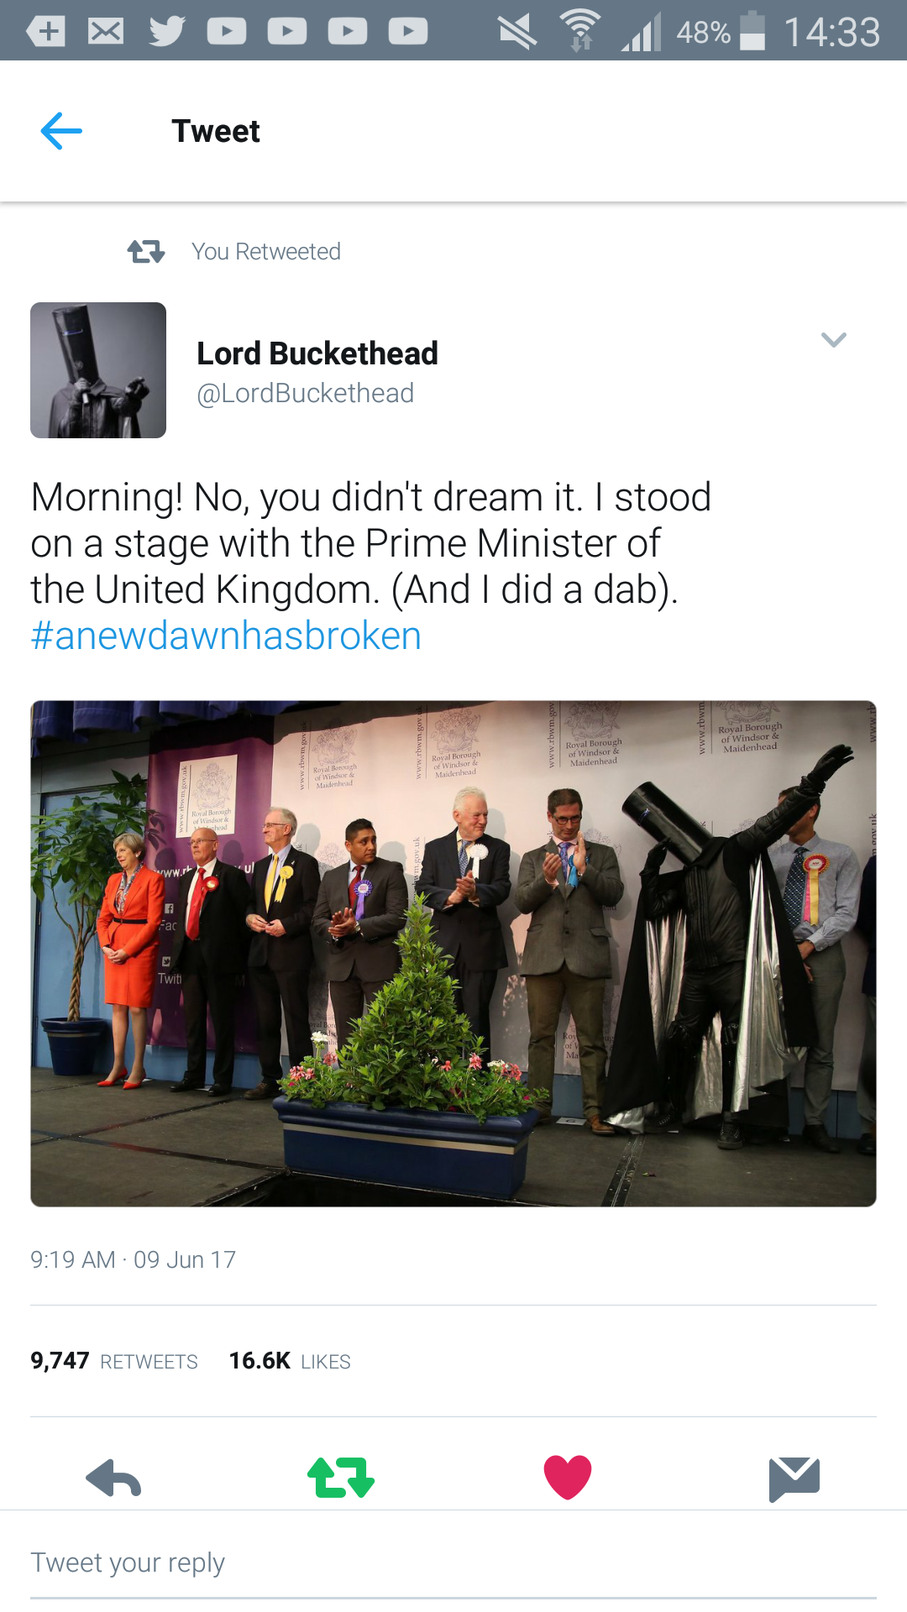 DabMaster for Prime Minister - meme